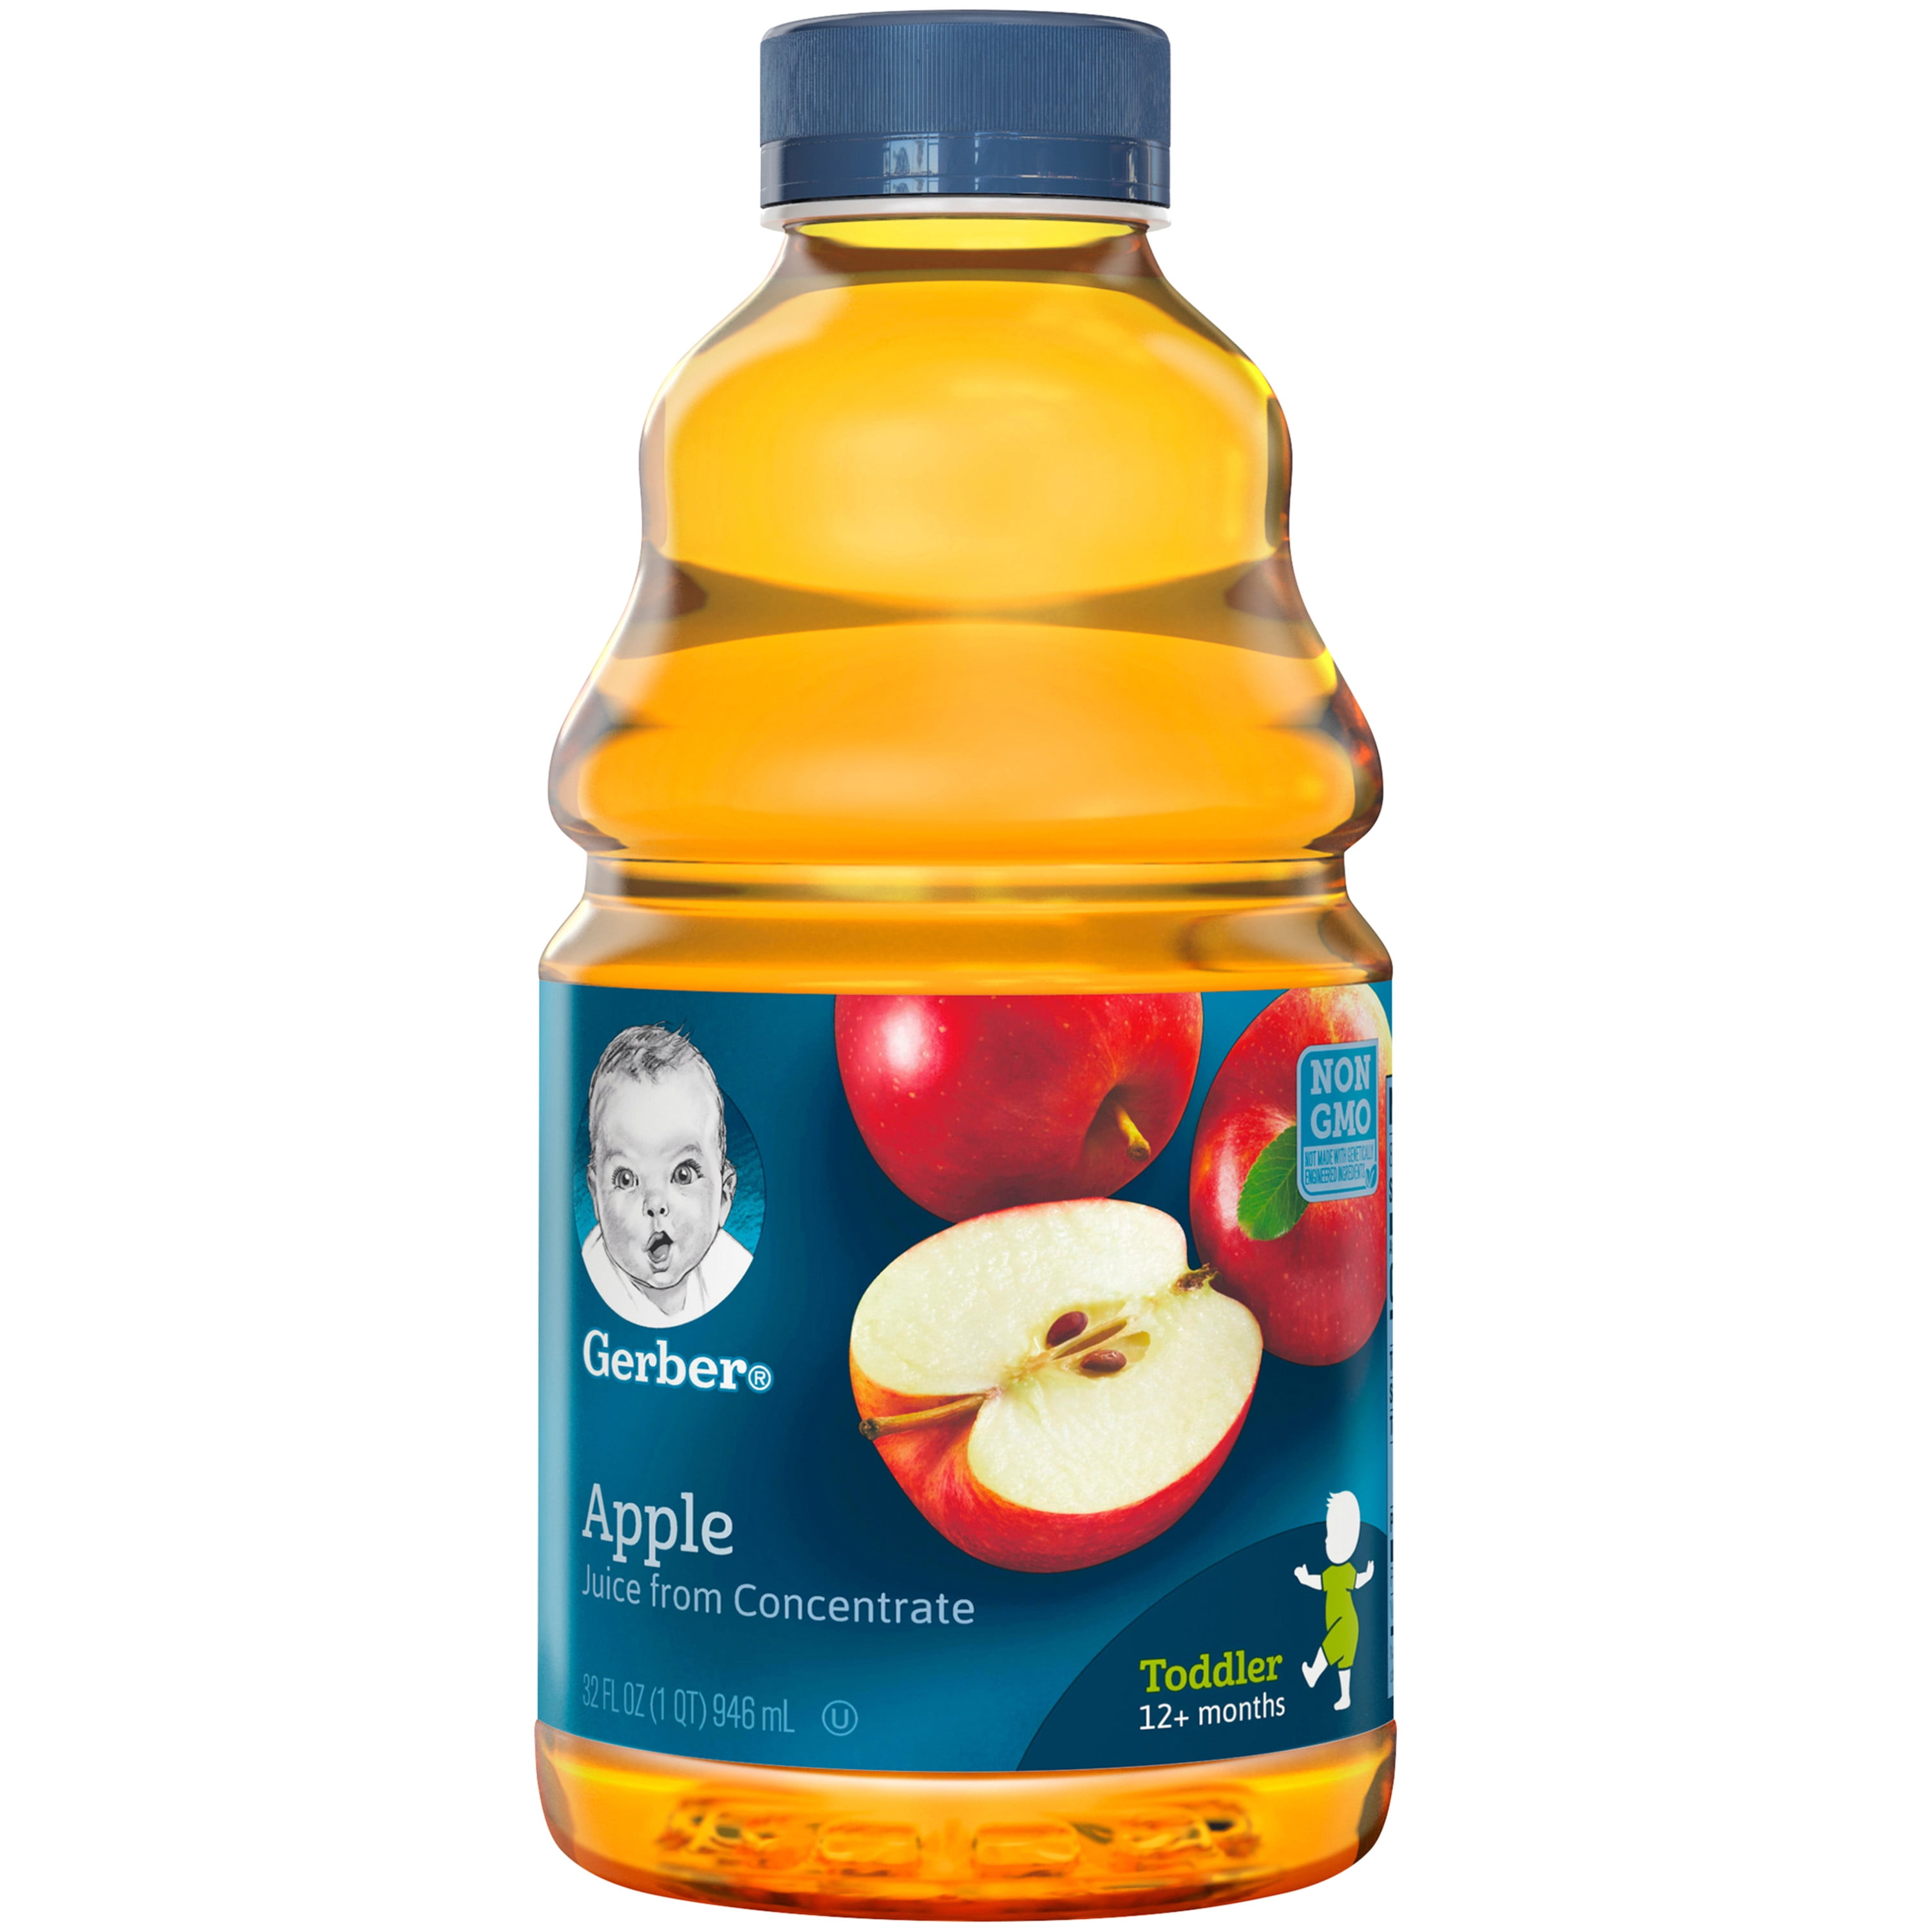 Gerber Apple Juice Fruit Juice, 32 fl oz Bottle